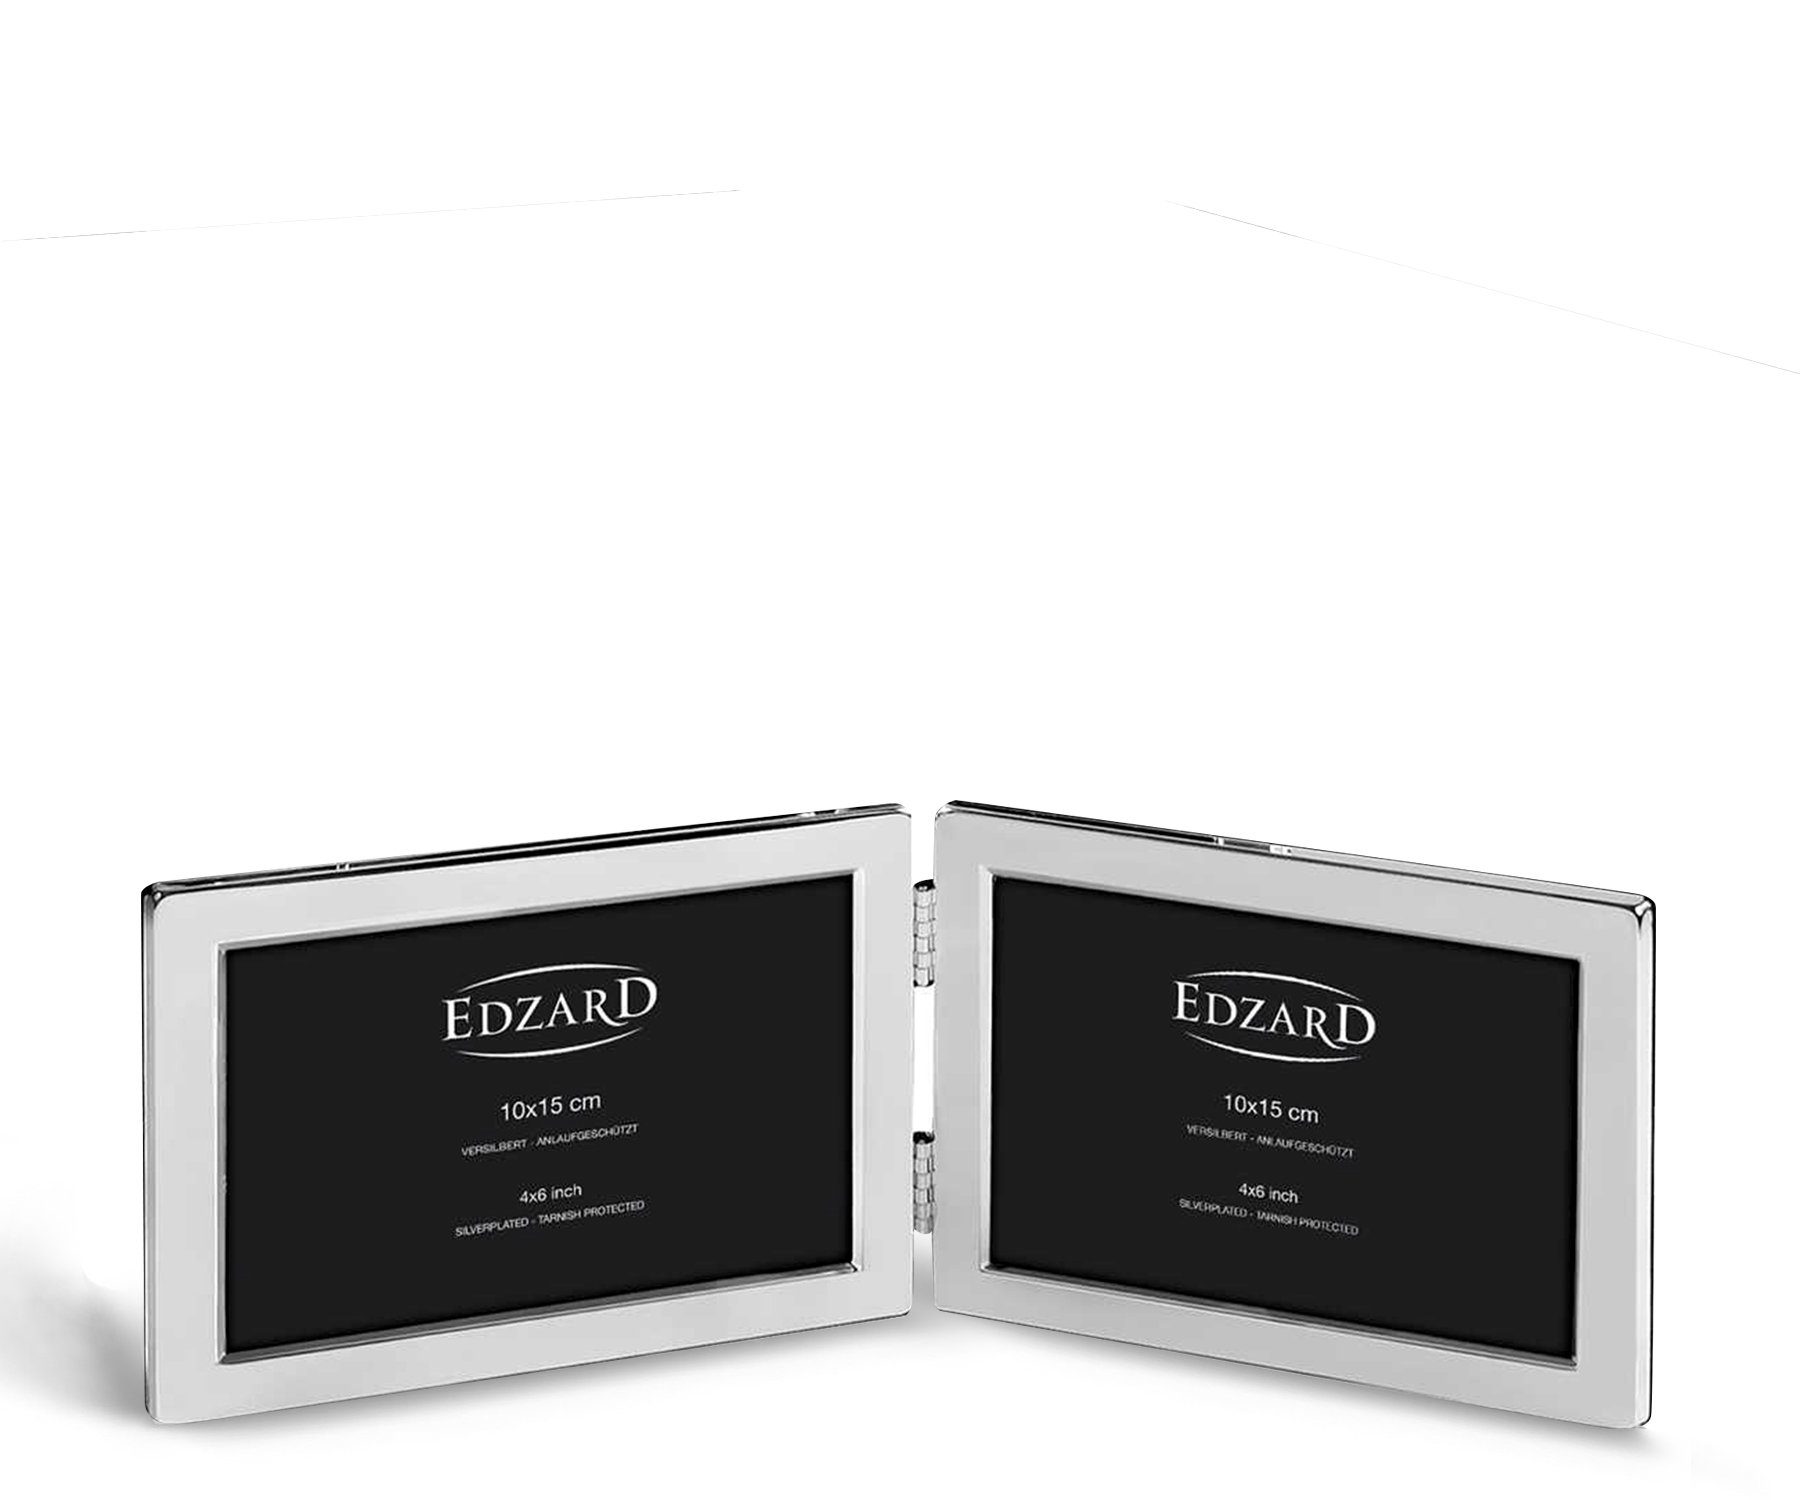 EDZARD Bilderrahmen Salerno, für 2 Fotos, versilbert und anlaufgeschützt, für 10x15 cm Foto